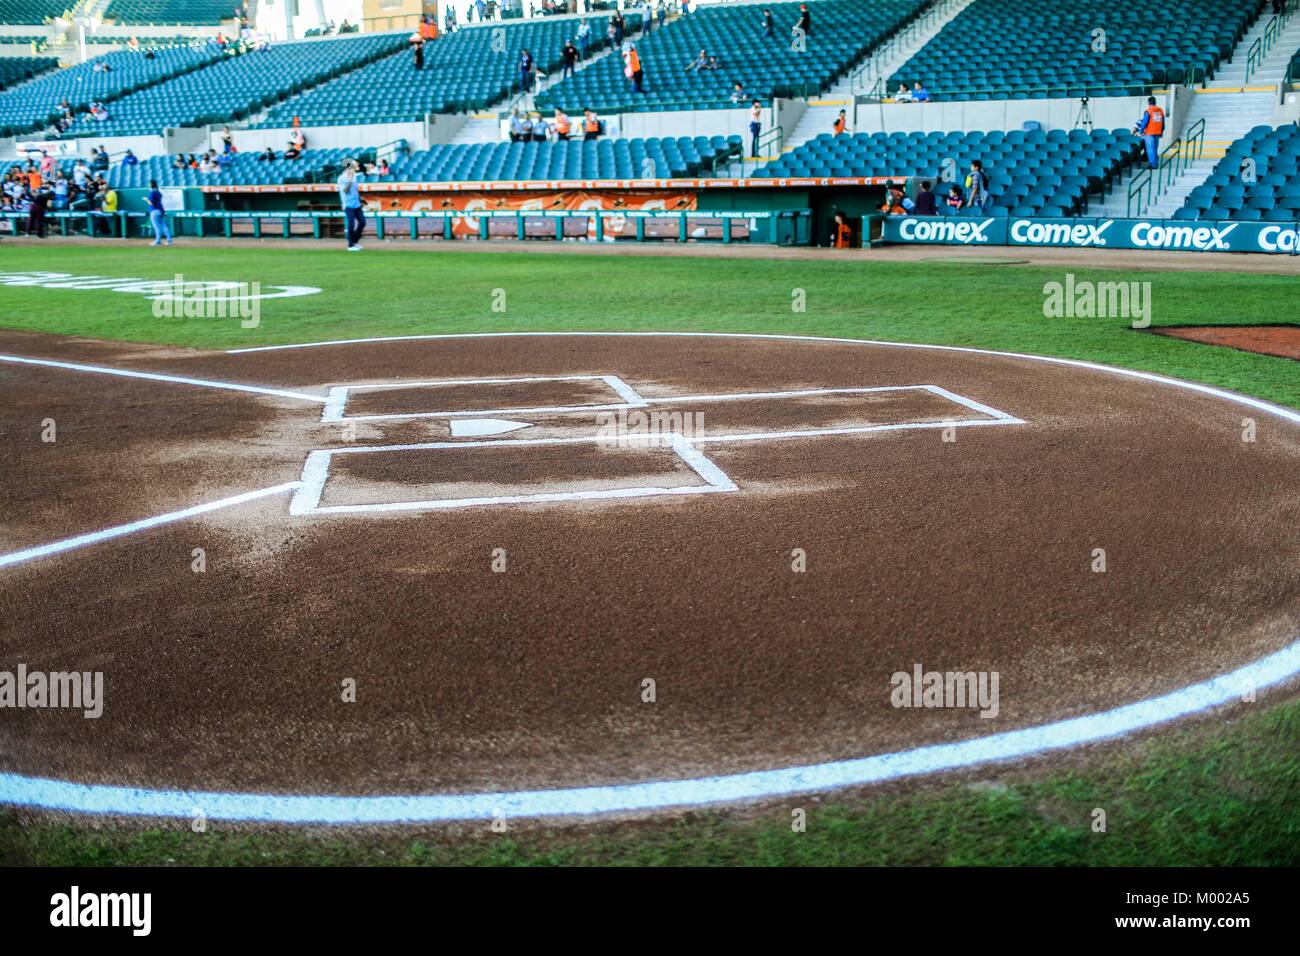 Detalle de la Tierra, Diamante, Home, Field, Bases y el Campo del Estadio Sonora, durante el juego de beisbol de la Liga Mexicana del Pacifico con e Stock Photo